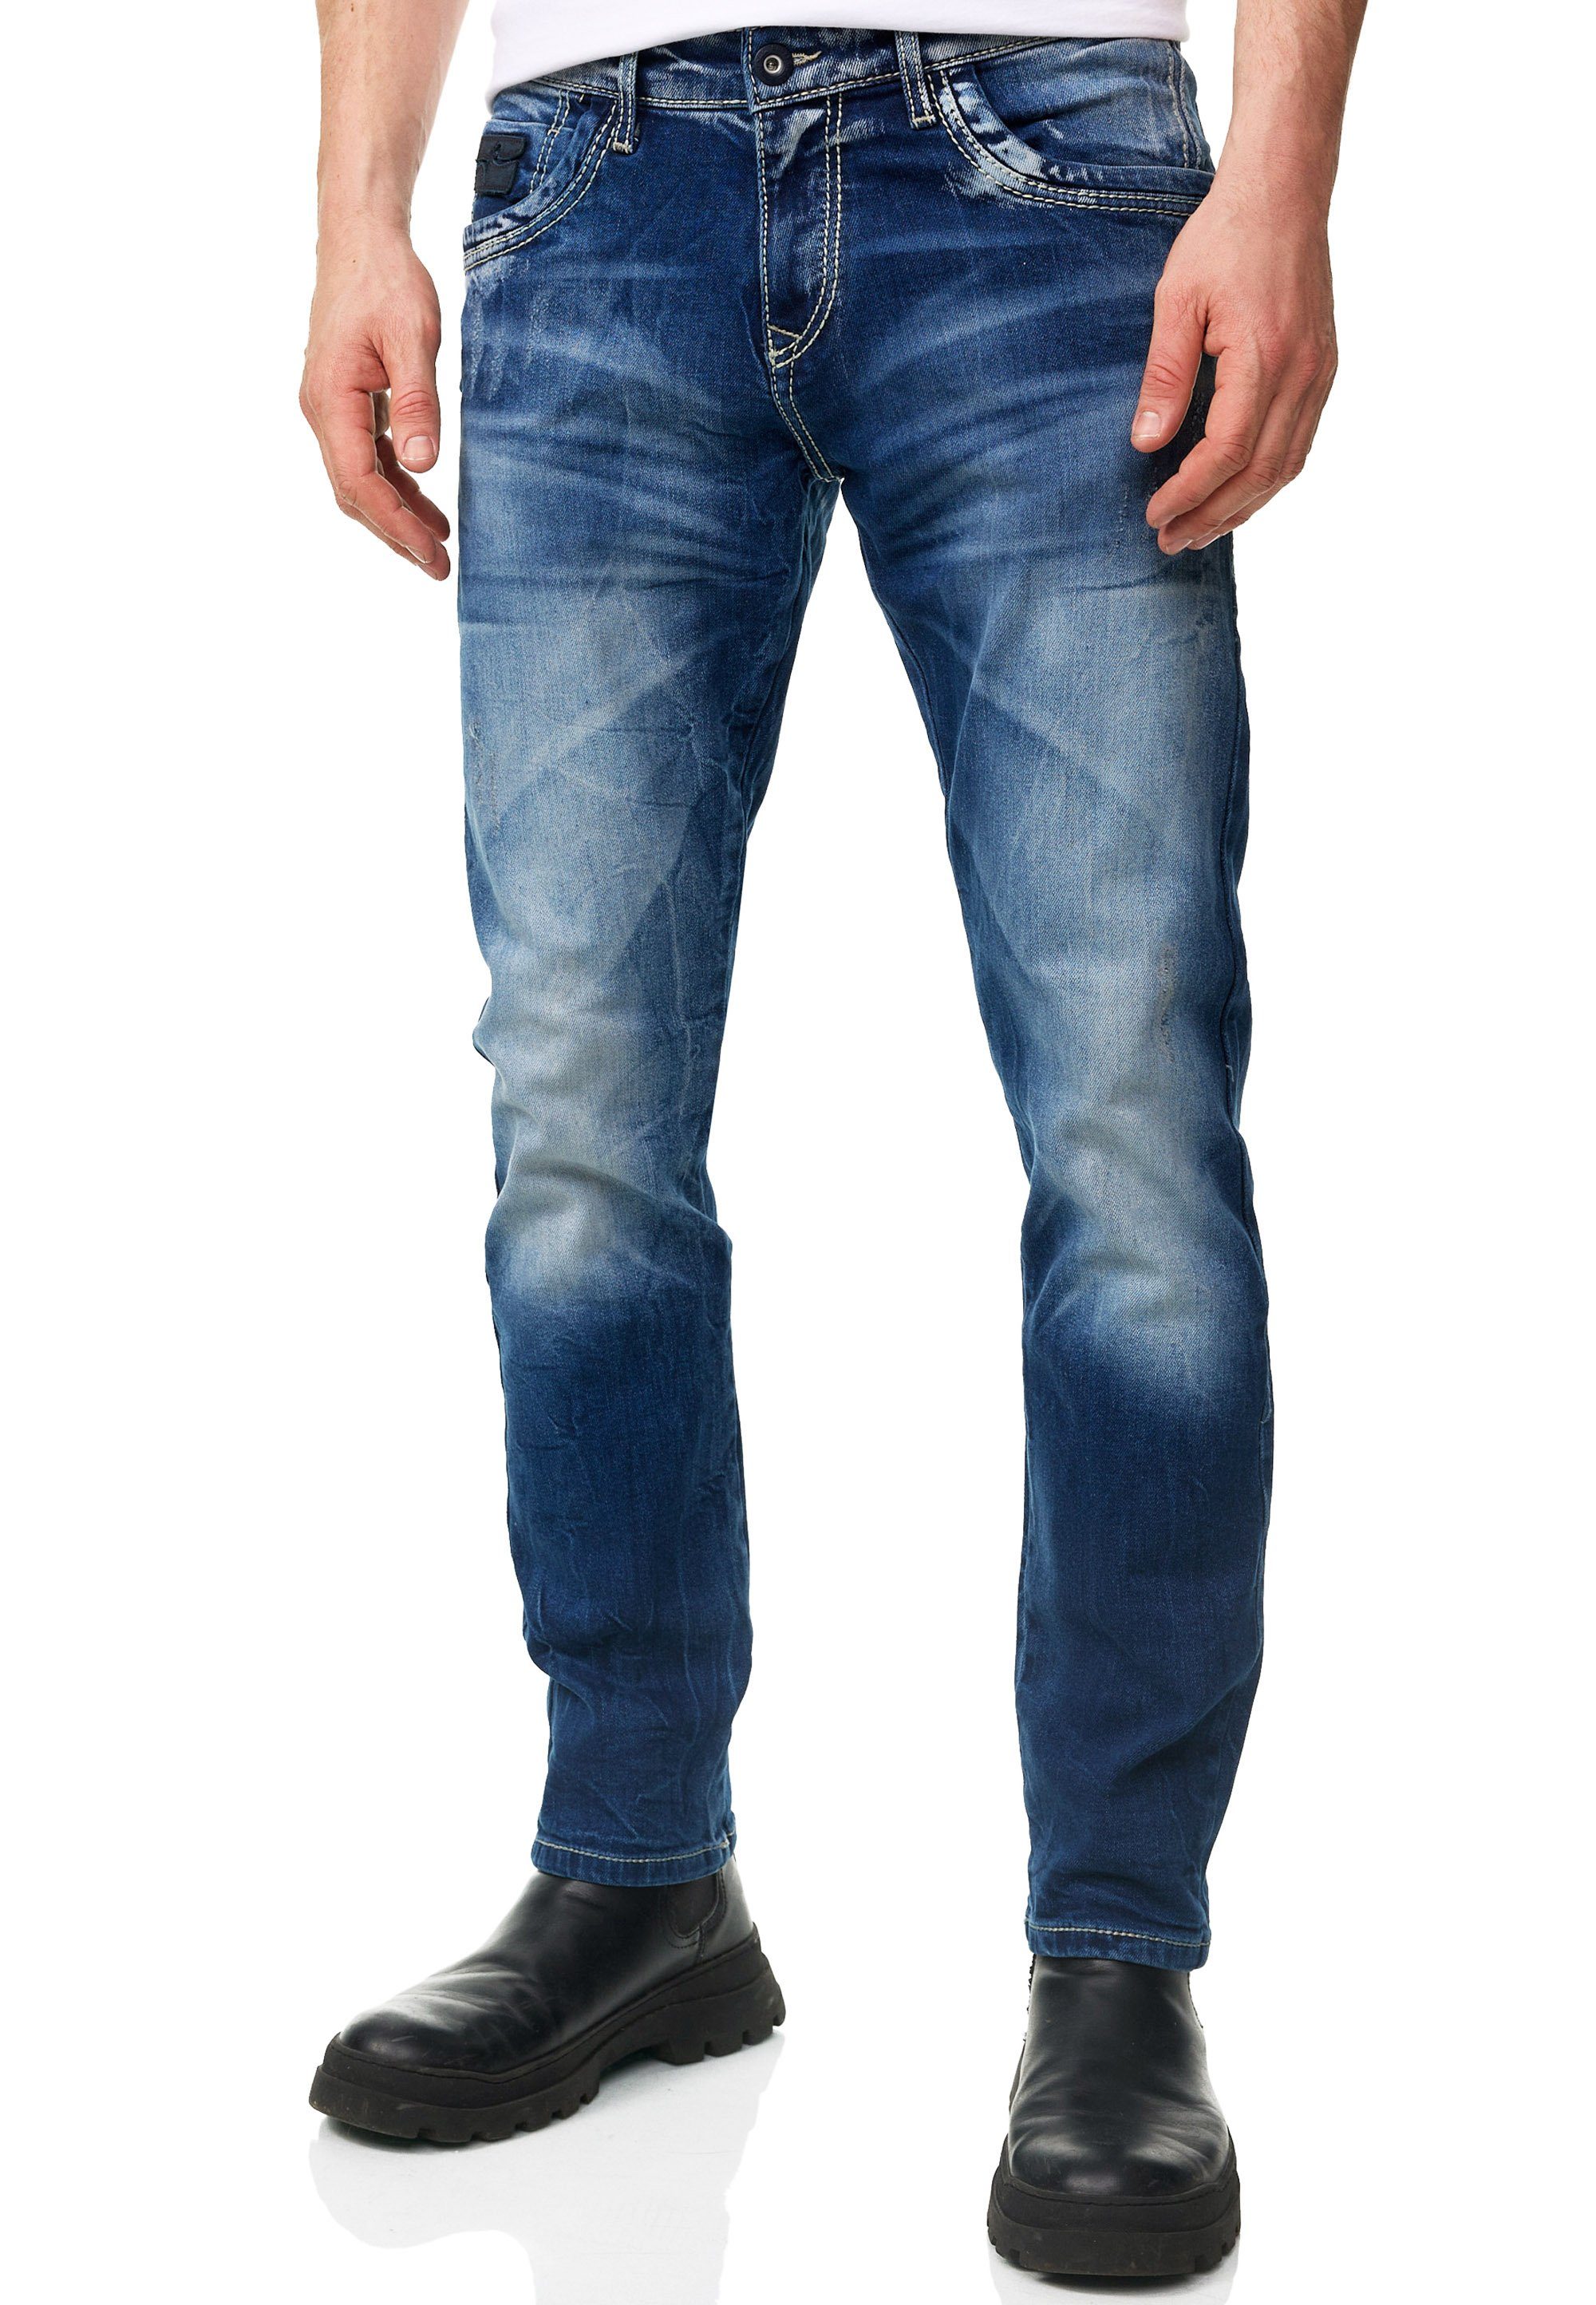 Rusty Neal Straight-Jeans YAMATO mit farblich abgesetzten Nähten dunkelblau